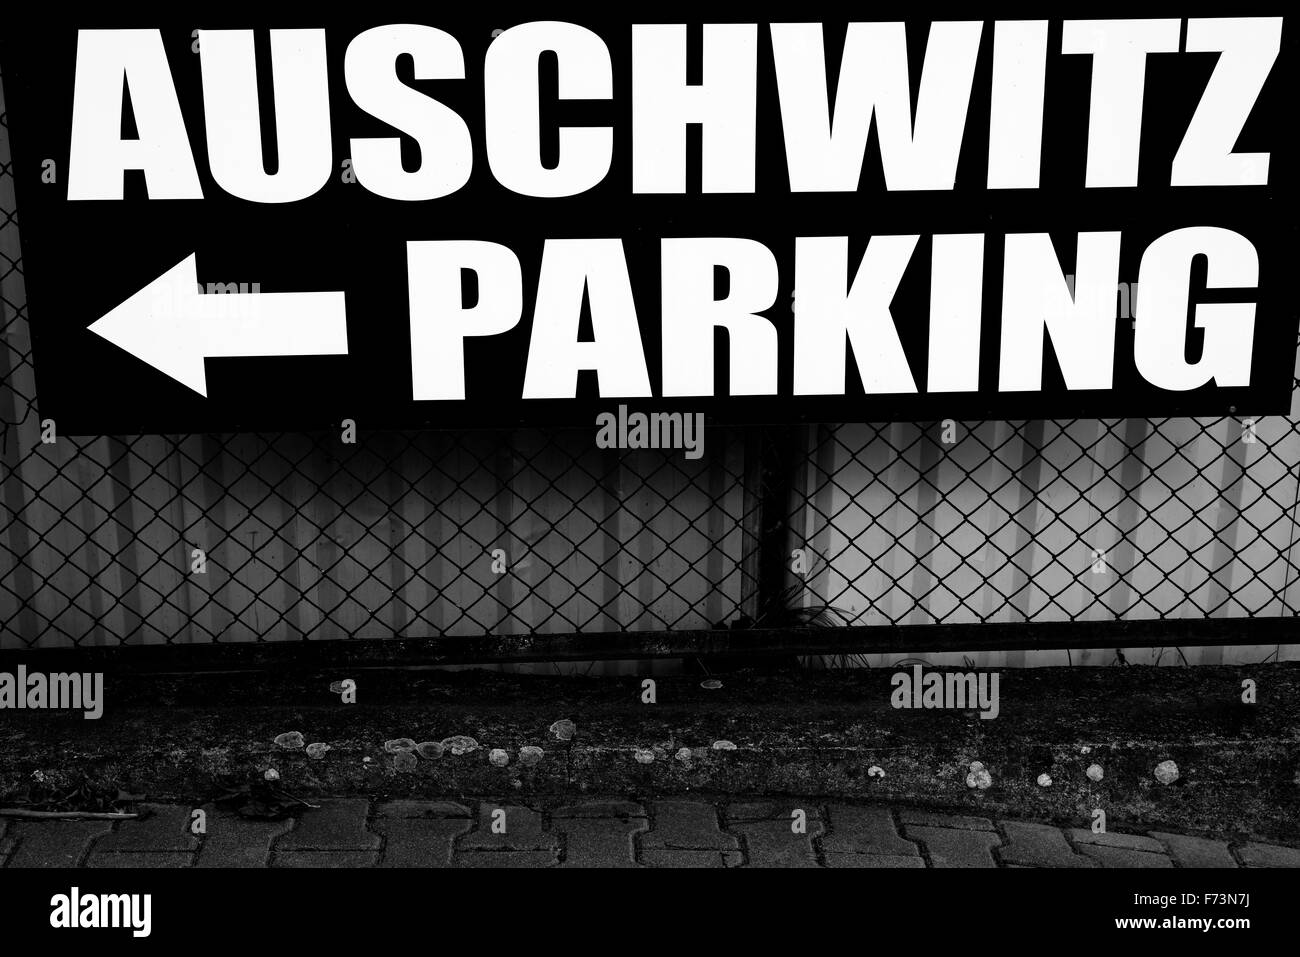 Polen, Auschwitz. Parkplatz Schild Stockfoto